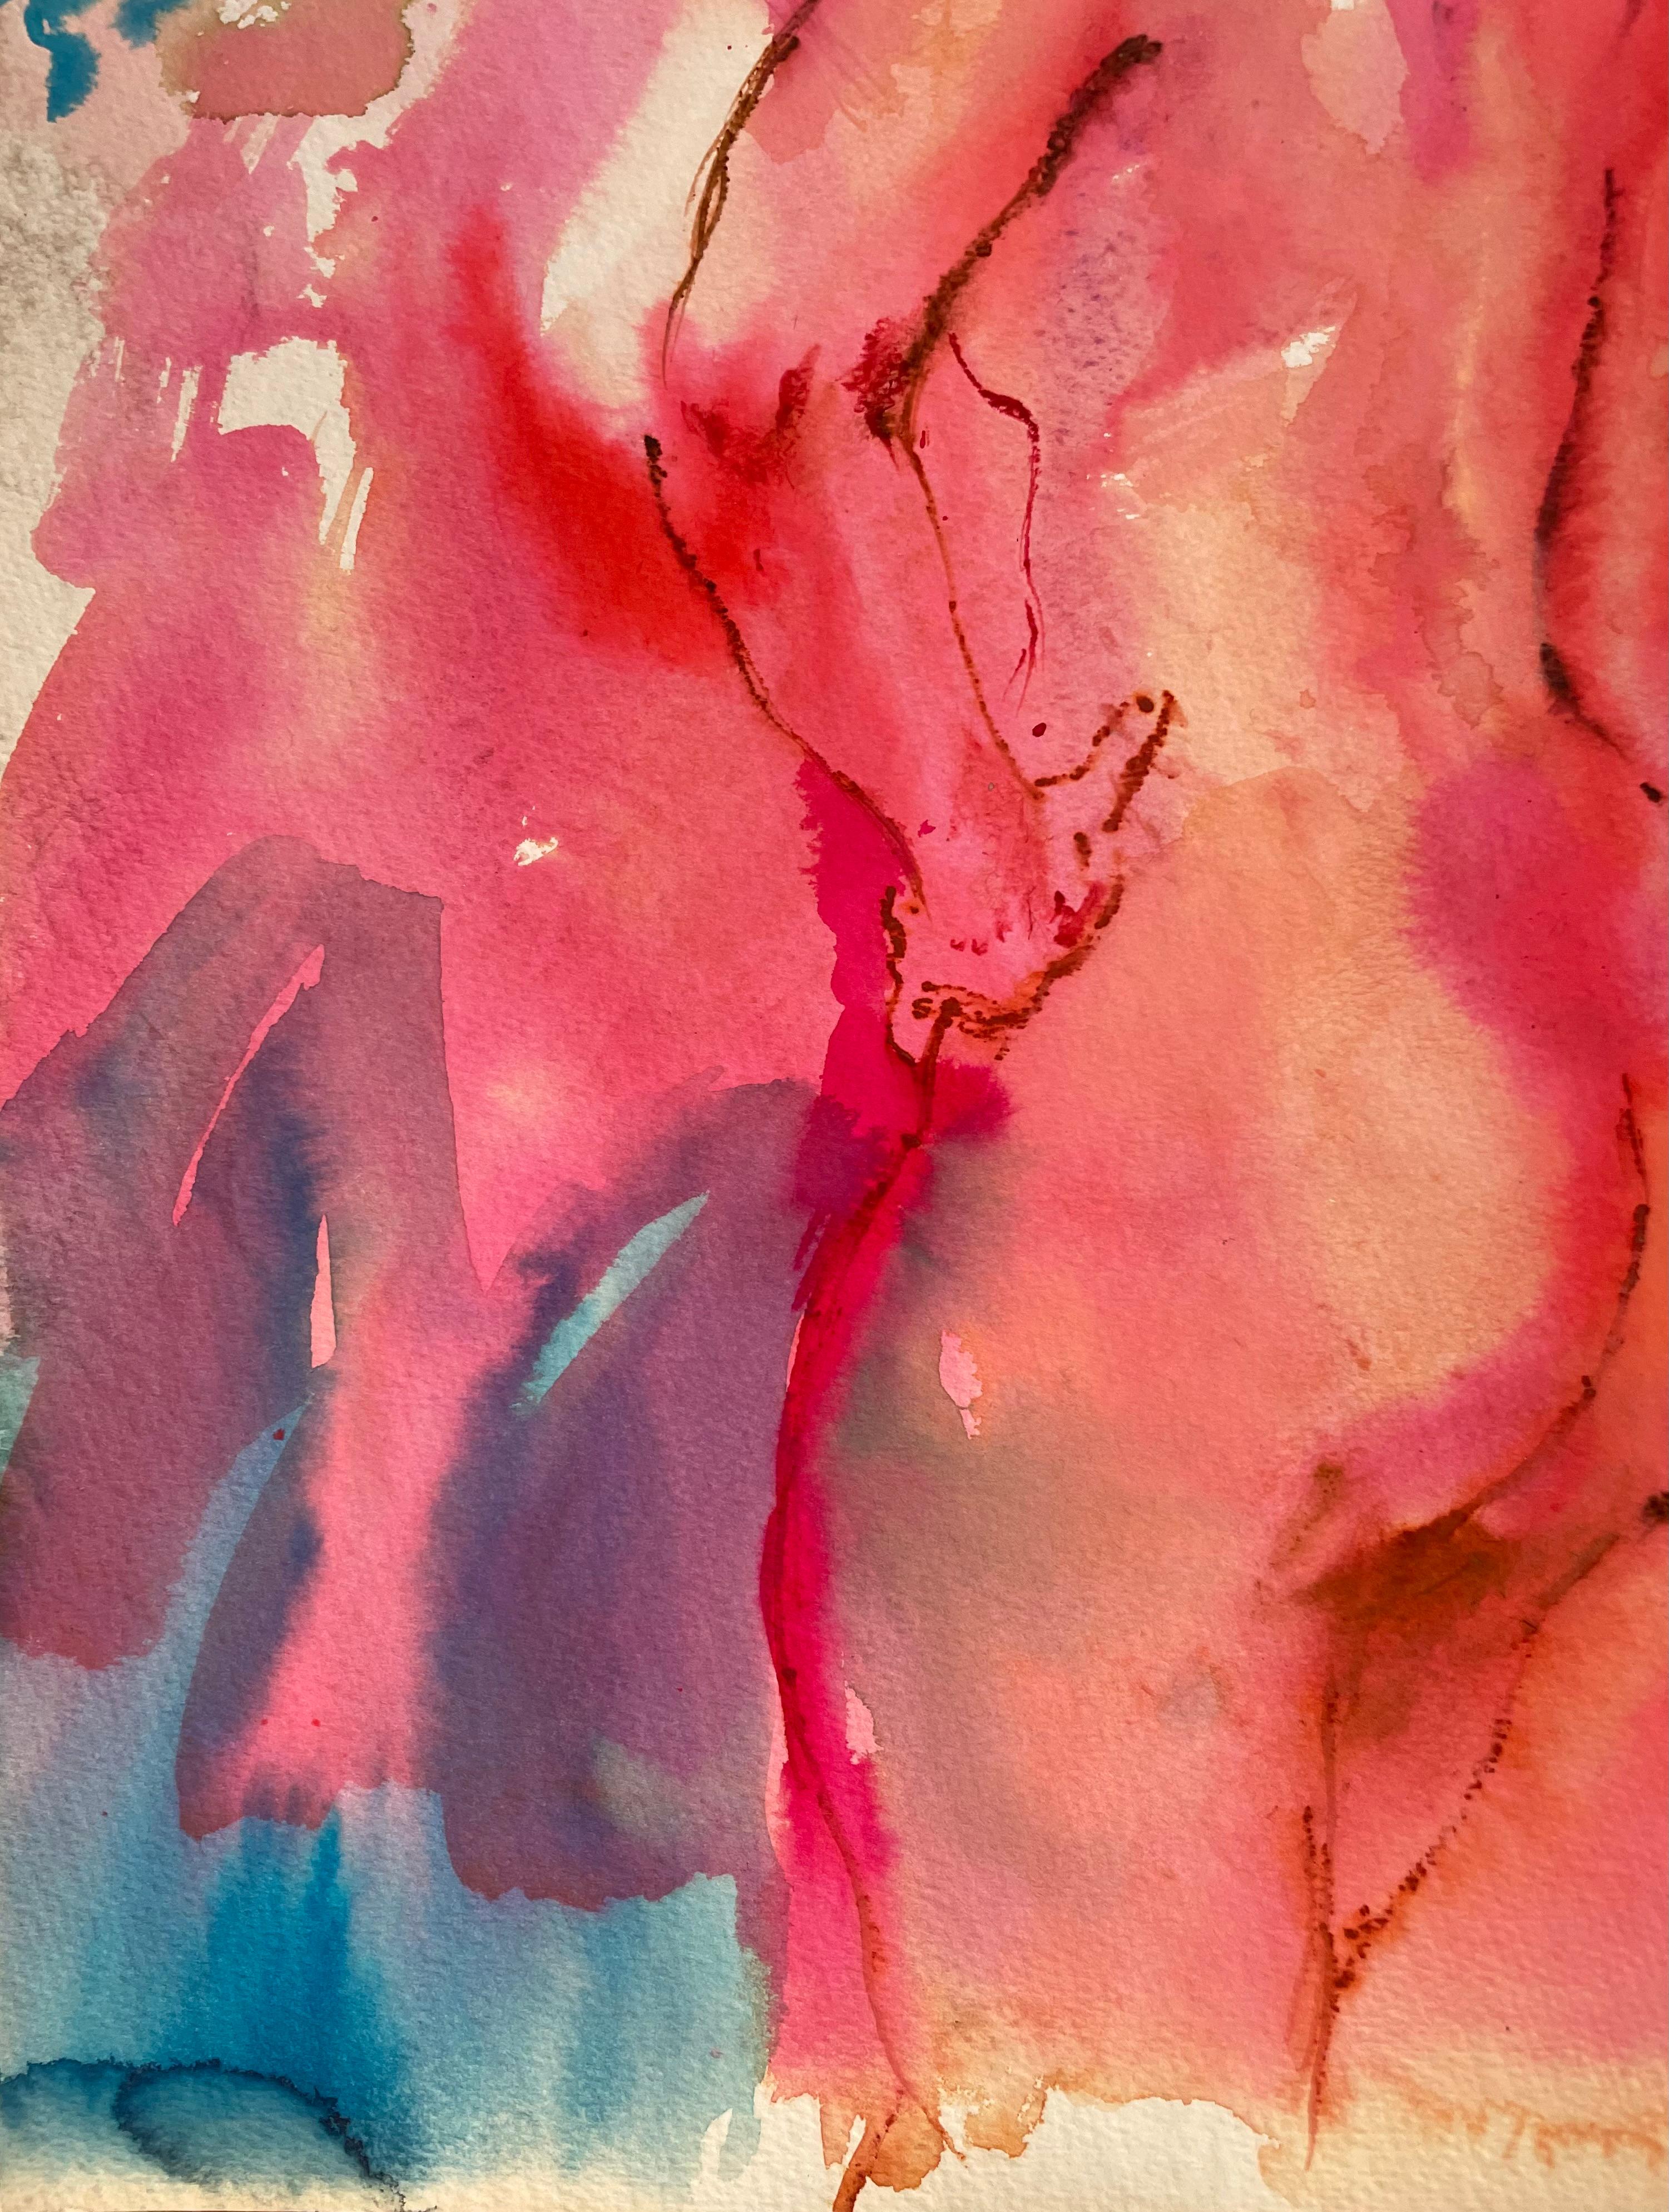 Original Tusche-, Gouache- und Ölpastell-Figurengemälde des berühmten kalifornischen Landschaftsmalers Ronald Shap aus dem zwanzigsten Jahrhundert. Skizze einer nackten Frau, die in neonpinken, orangefarbenen und blauen Tönen steht. 23x18 Zoll auf